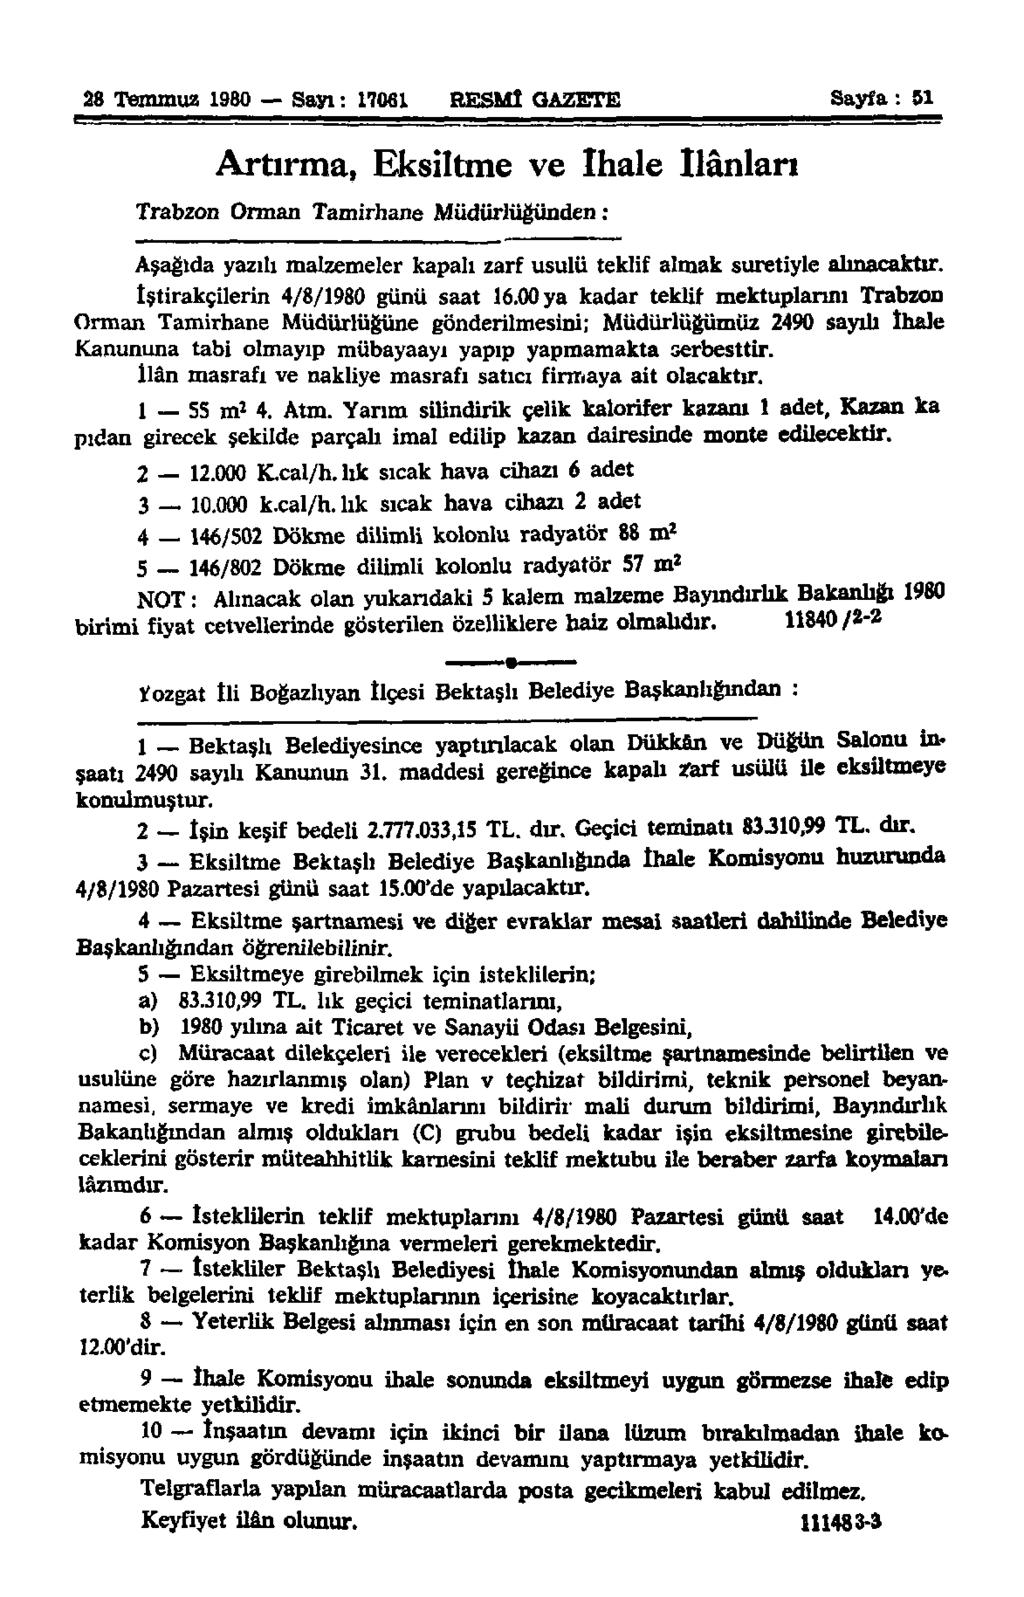 28 Temmuz 1980 Sayı: 17061 RESMÎ GAZETE Sayfa : 51 Artırma, Eksiltme ve ihale ilânları Trabzon Orman Tamirhane Müdürlüğünden : Aşağıda yazılı malzemeler kapalı zarf usulü teklif almak suretiyle